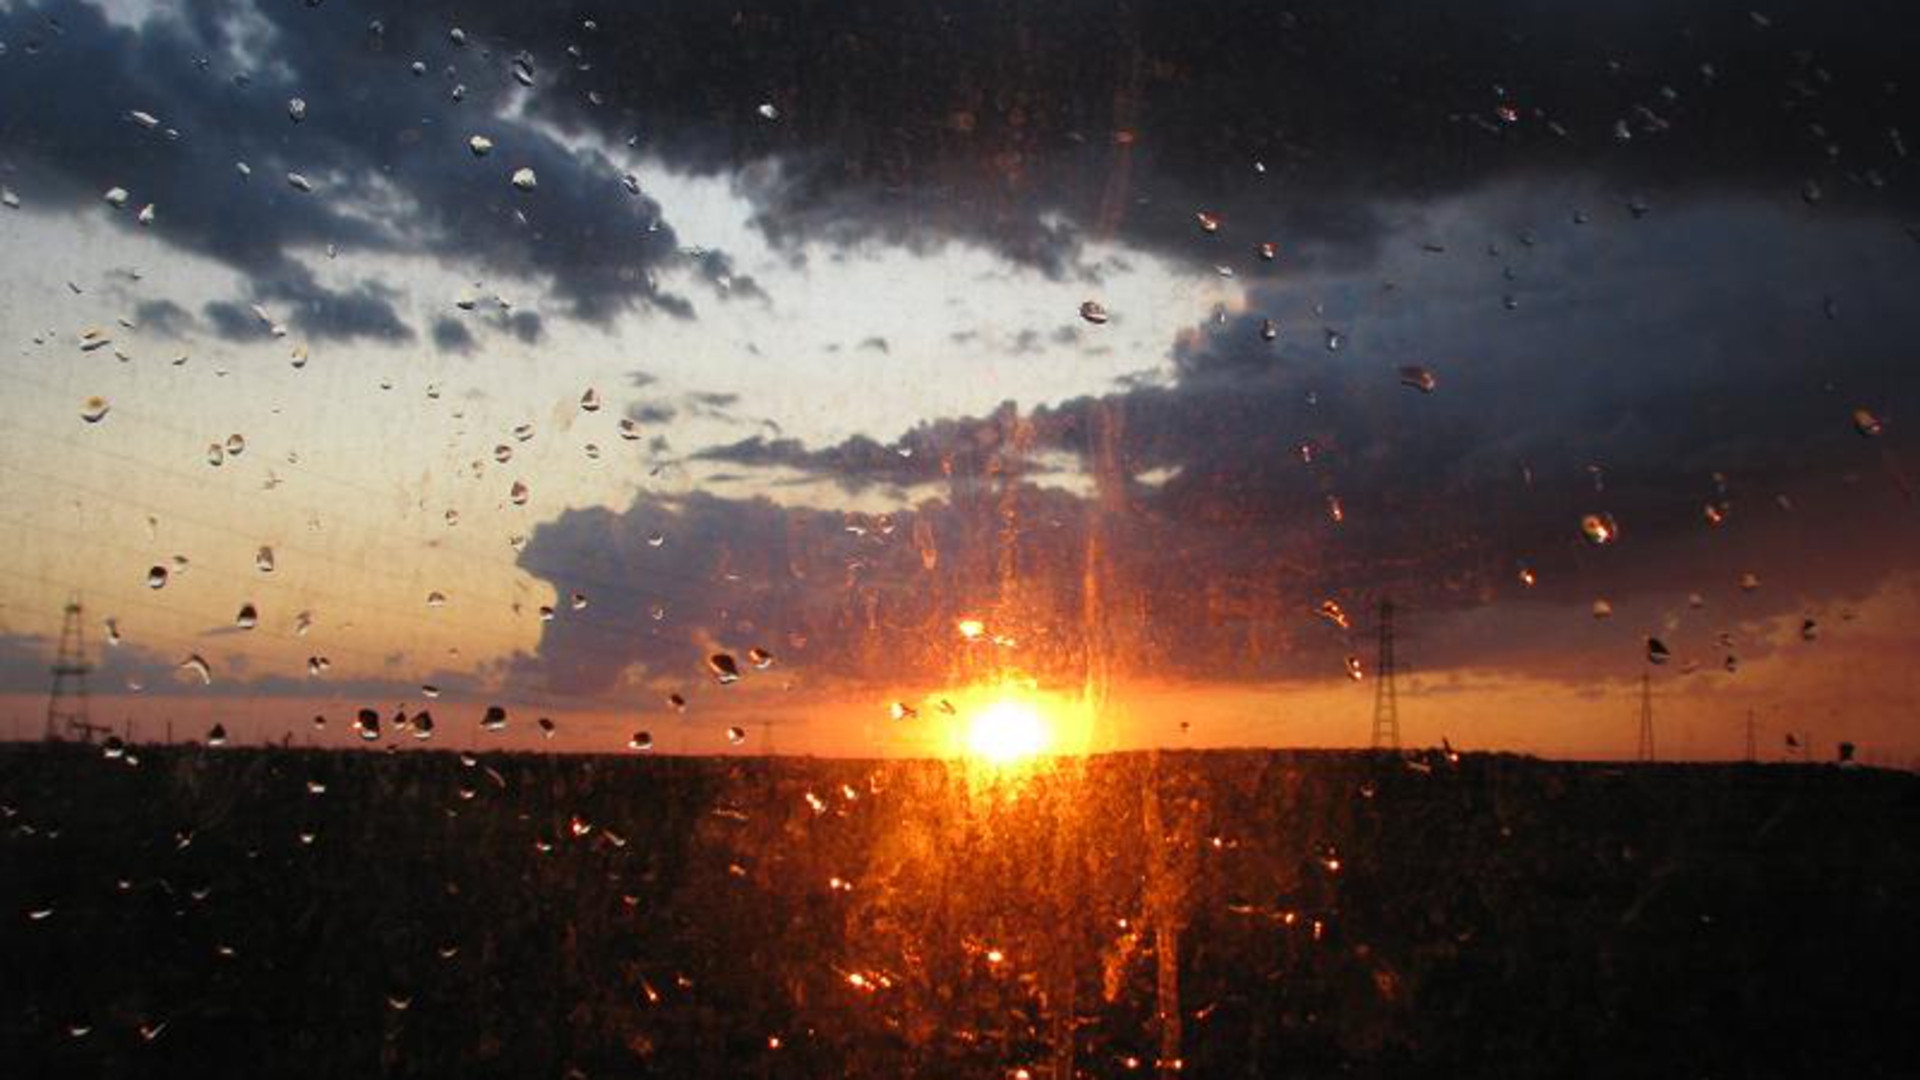 sunset and raindrops.jpg